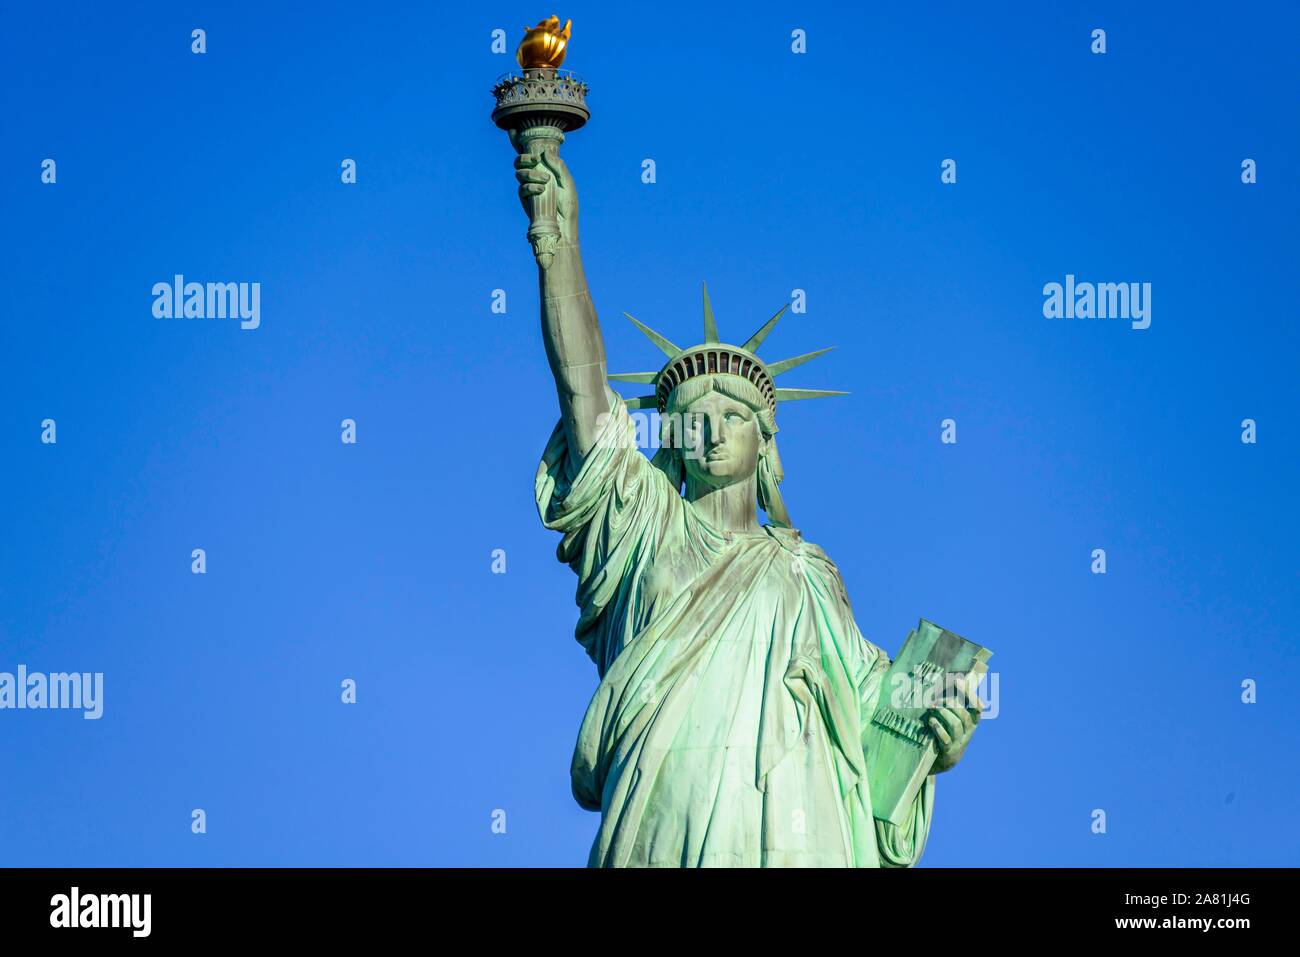 Statua della Libertà nella parte anteriore del cielo blu, Liberty Island e la Statua della Libertà monumento nazionale, la città di New York, New York, Stati Uniti d'America Foto Stock